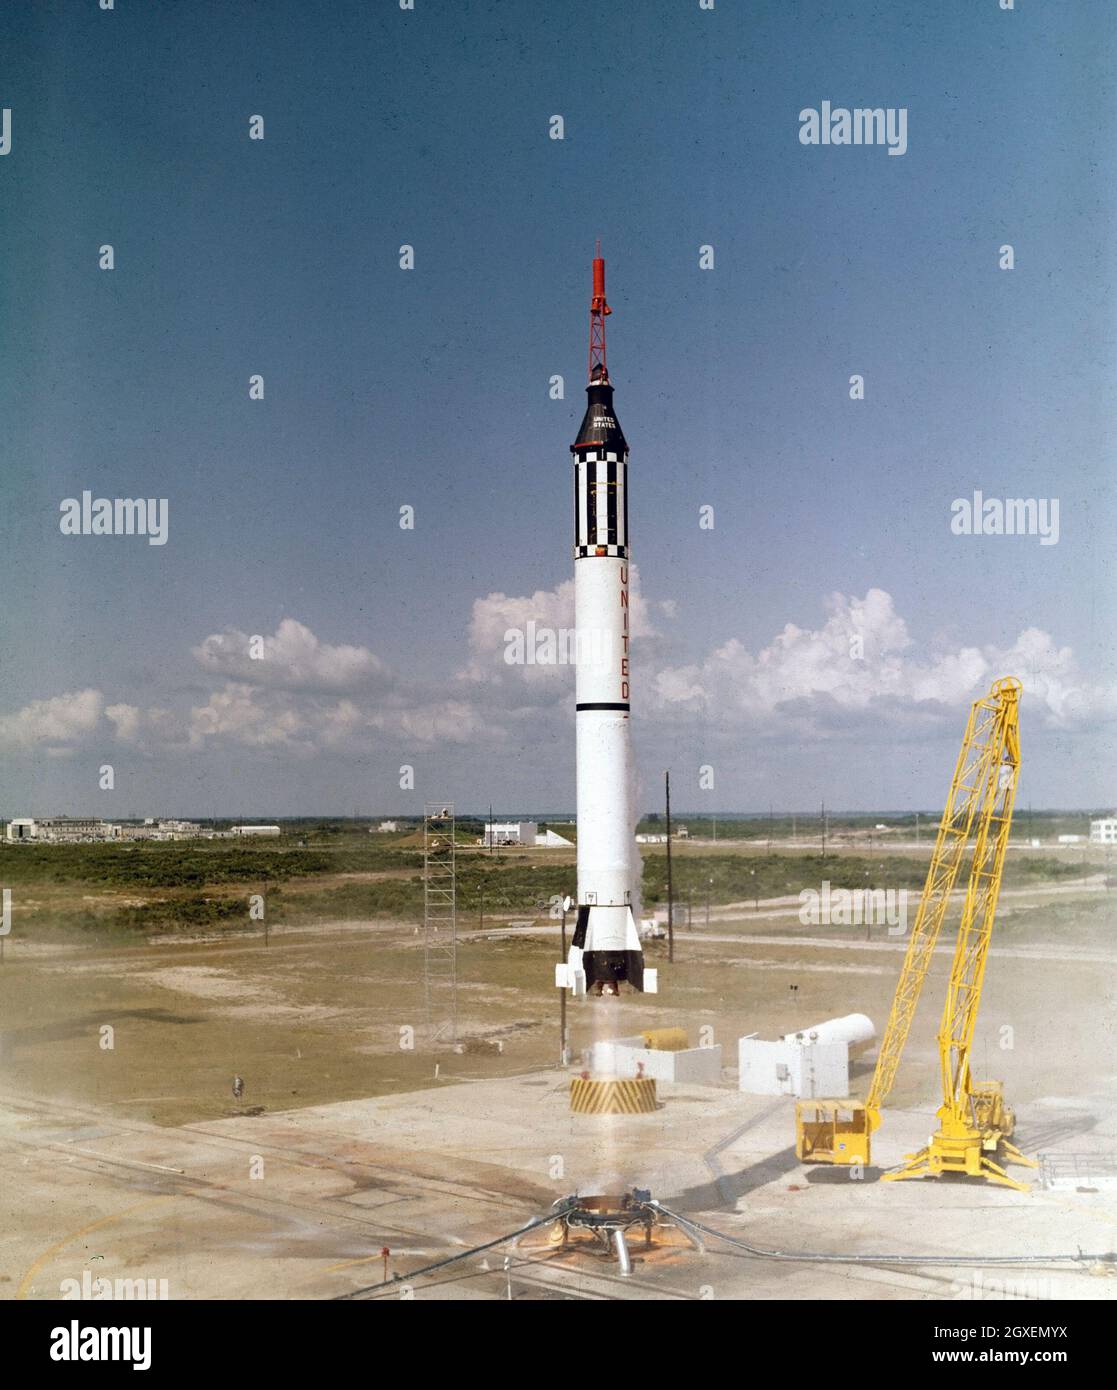 Astronaut Alan B. Shepard, Jr. hebt am 5. Mai 1961 in der Mercury-Raumsonde Freedom 7 ab. Dieser dritte Flug des Mercury-Redstone (MR-3) Fahrzeugs, entwickelt von Dr. Wernher von Braun und dem Raketenteam in Huntsille, Alabama, war die erste marned Weltraummission für die Vereinigten Staaten. Während des 15-minütigen suborbitalen Fluges erreichte Shepard eine Höhe von 115 Meilen und fuhr 302 Meilen in die Unterweite Stockfoto